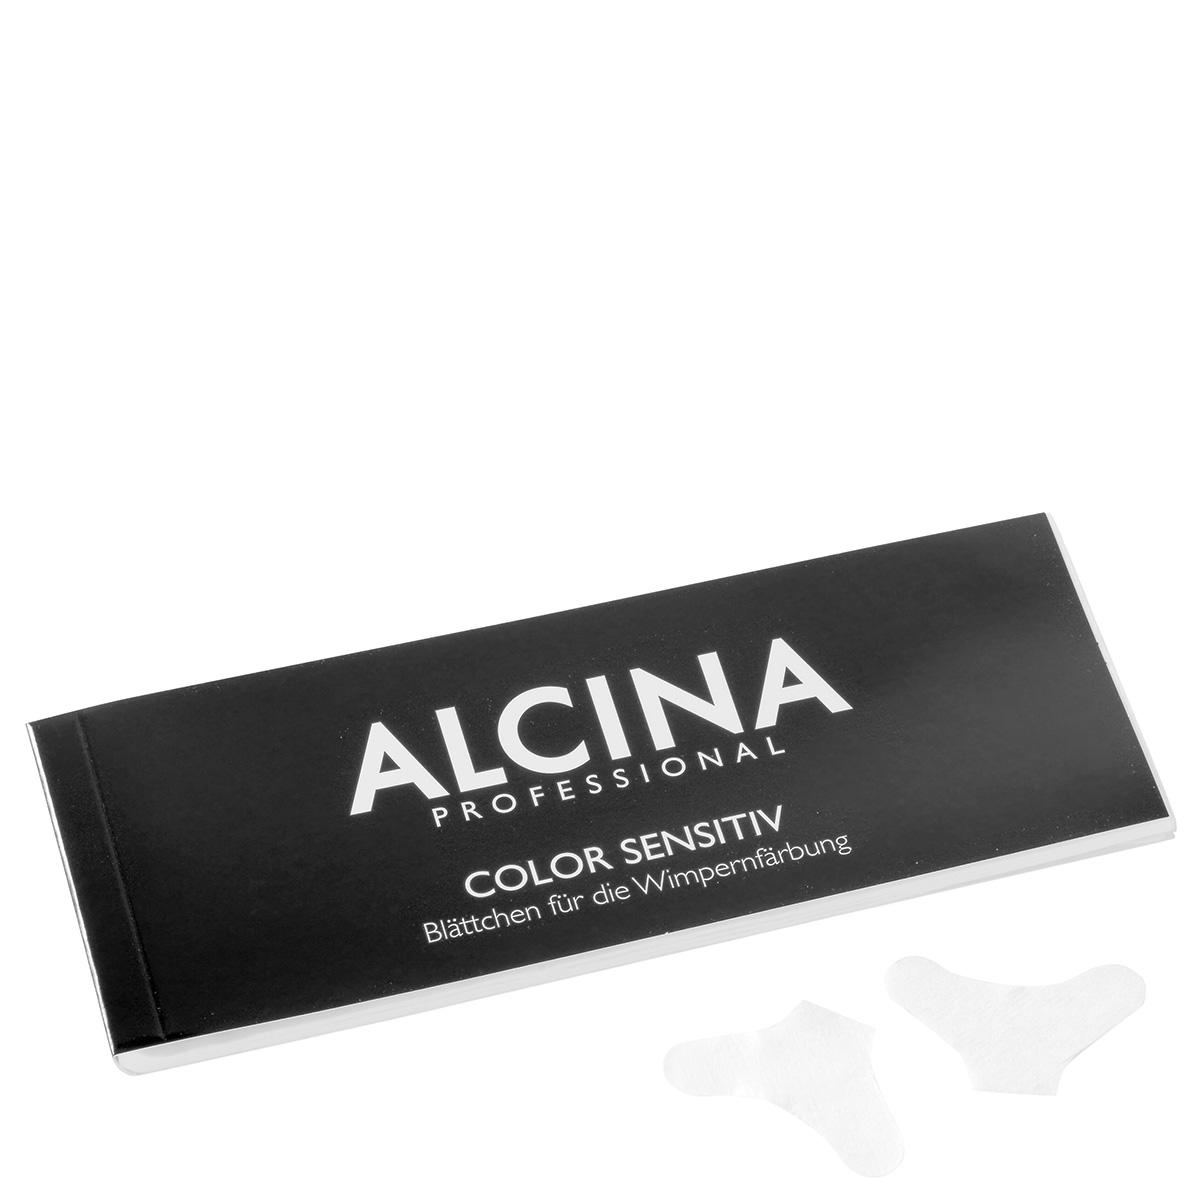 Alcina Color Sensitiv Wimpernblättchen 1 Block 96 Blatt - 1